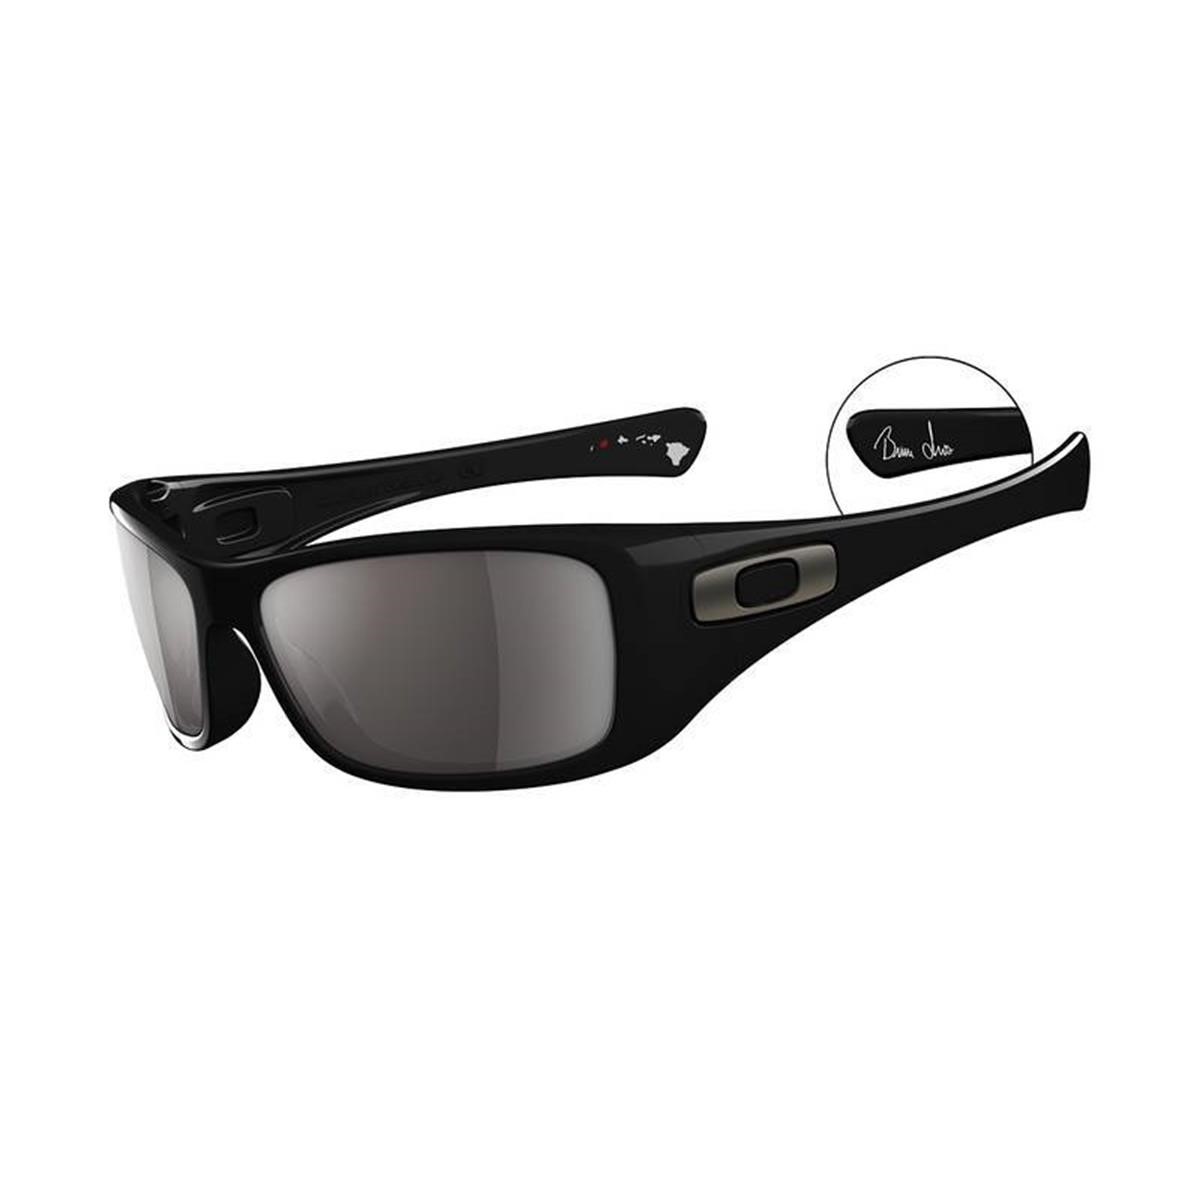 Freizeit/Streetwear Bekleidung-Sonnenbrillen - Oakley Sonnenbrille Hijinx Black, Bruce Irons Signature Series